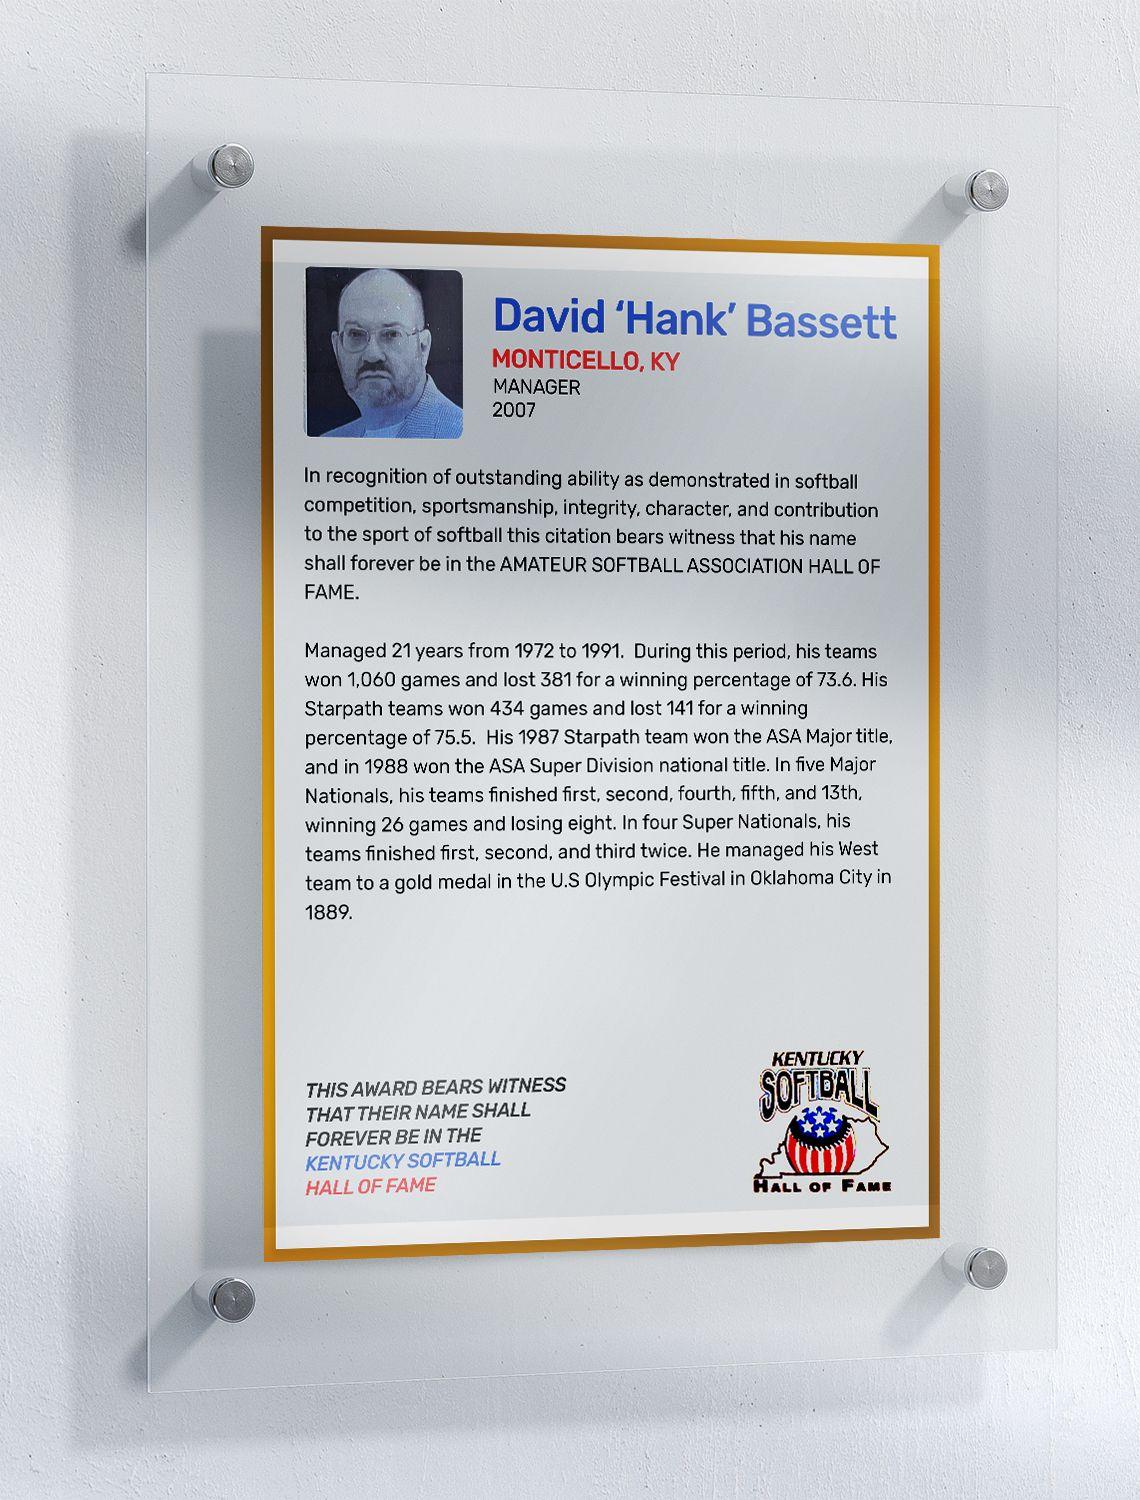 Bassett, David "Hank"